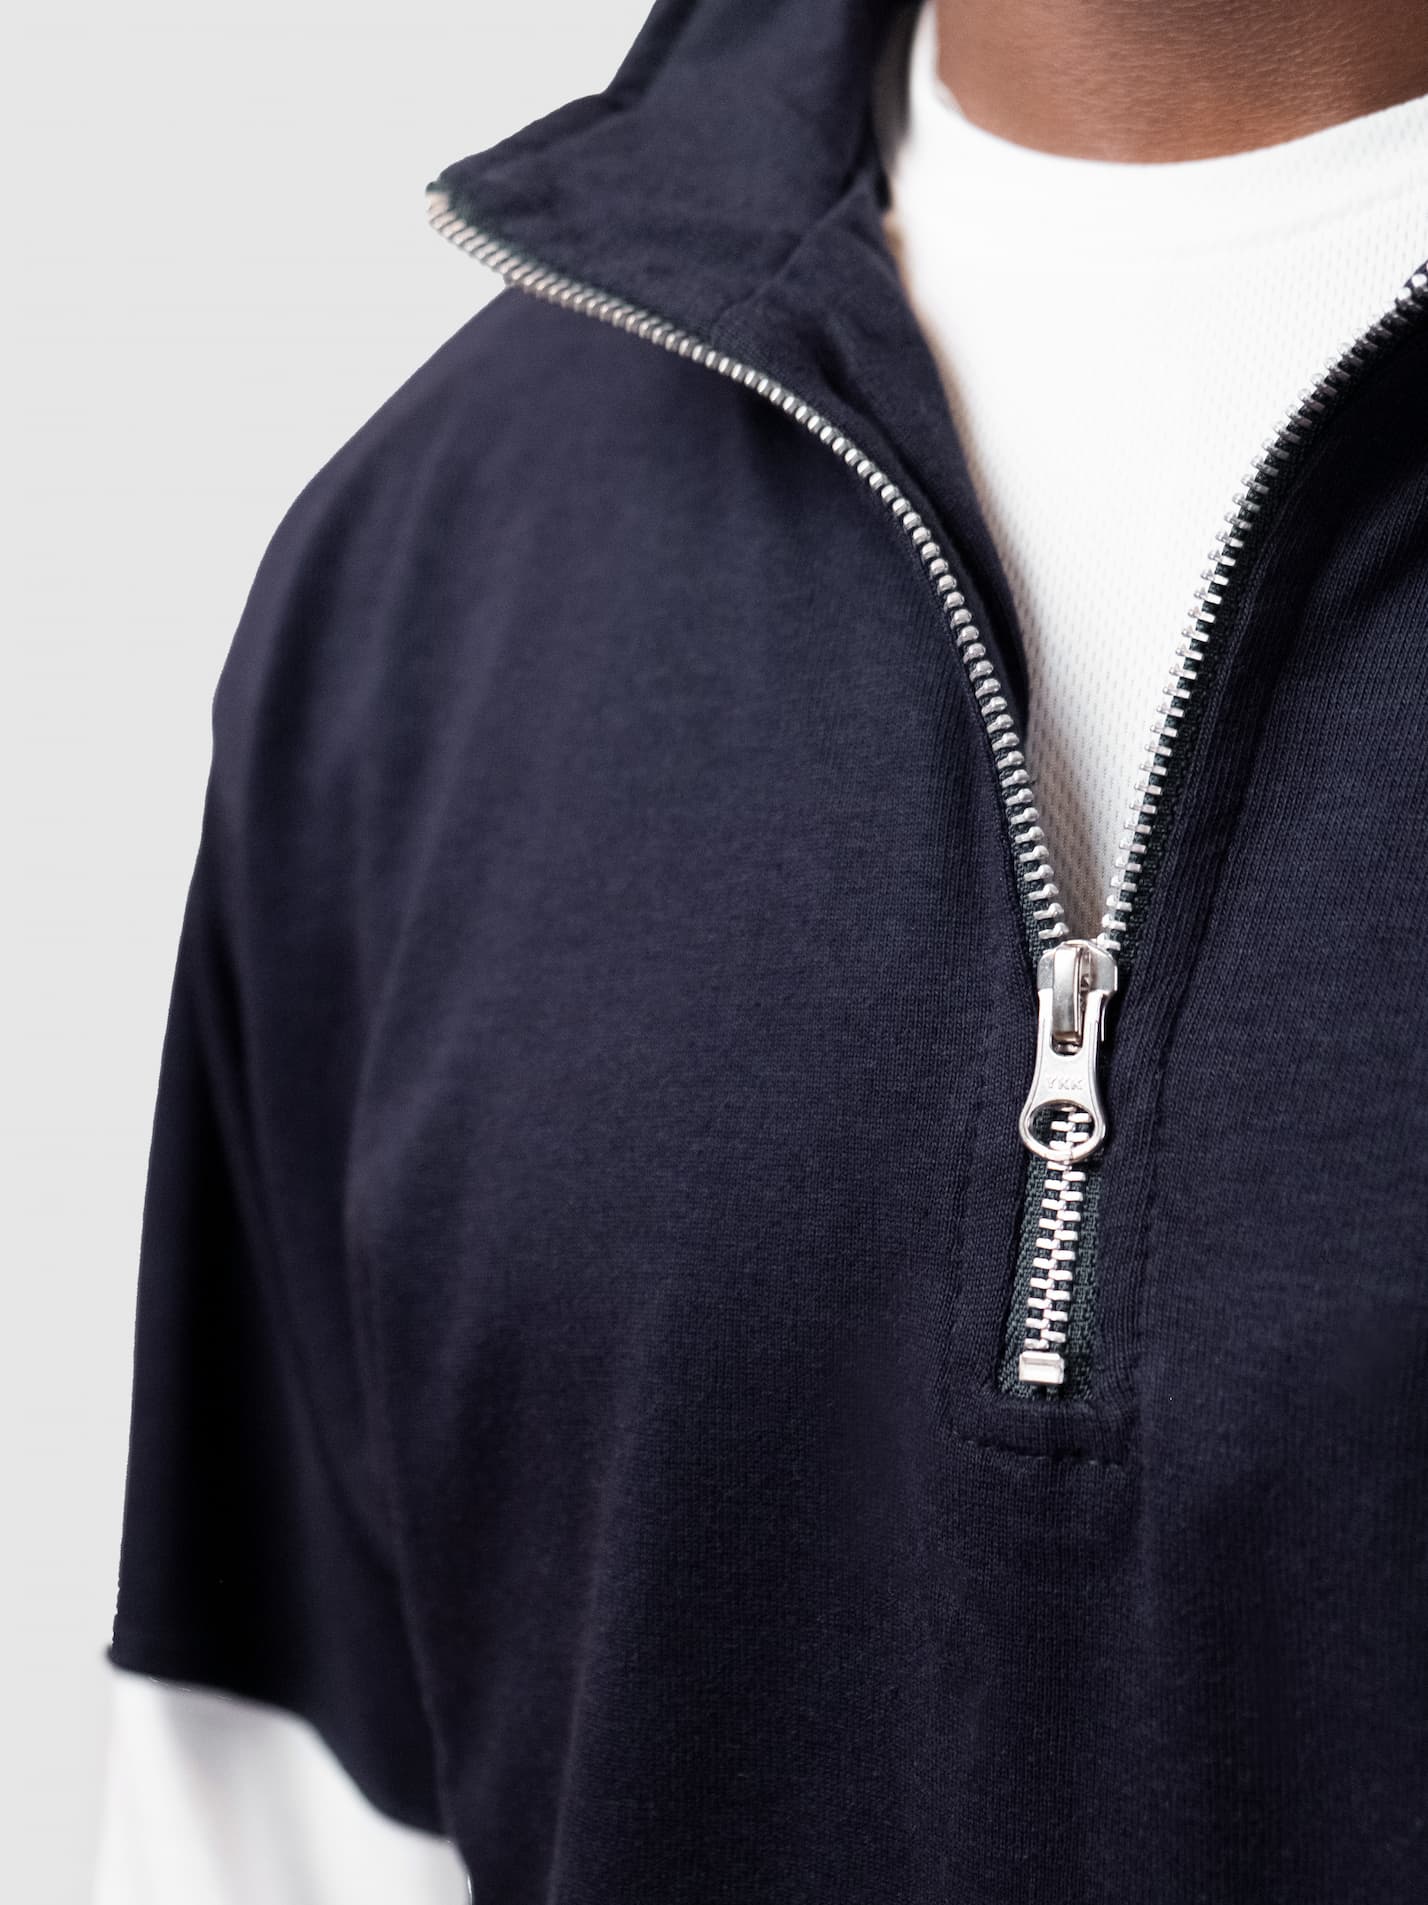 Queens' College Cambridge JCR Unisex Panelled 1/4 Zip Sweatshirt